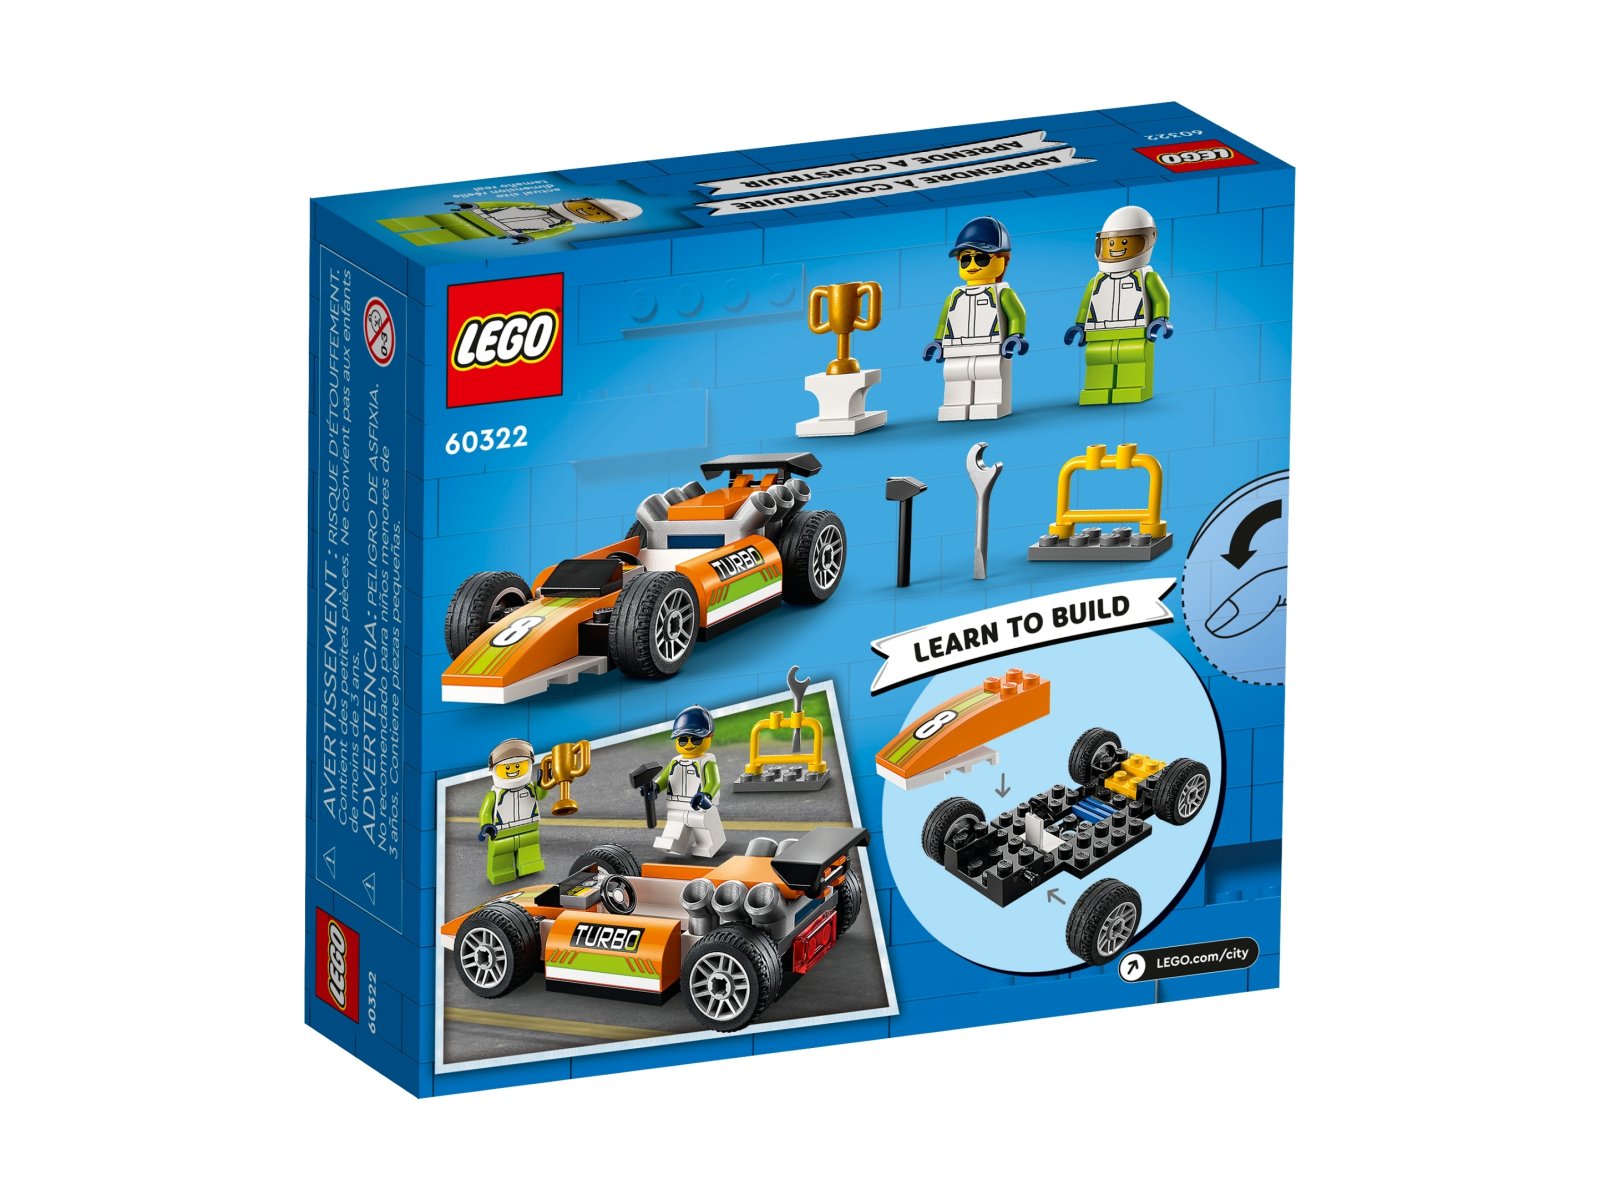 LEGO 60322 Samochód wyścigowy